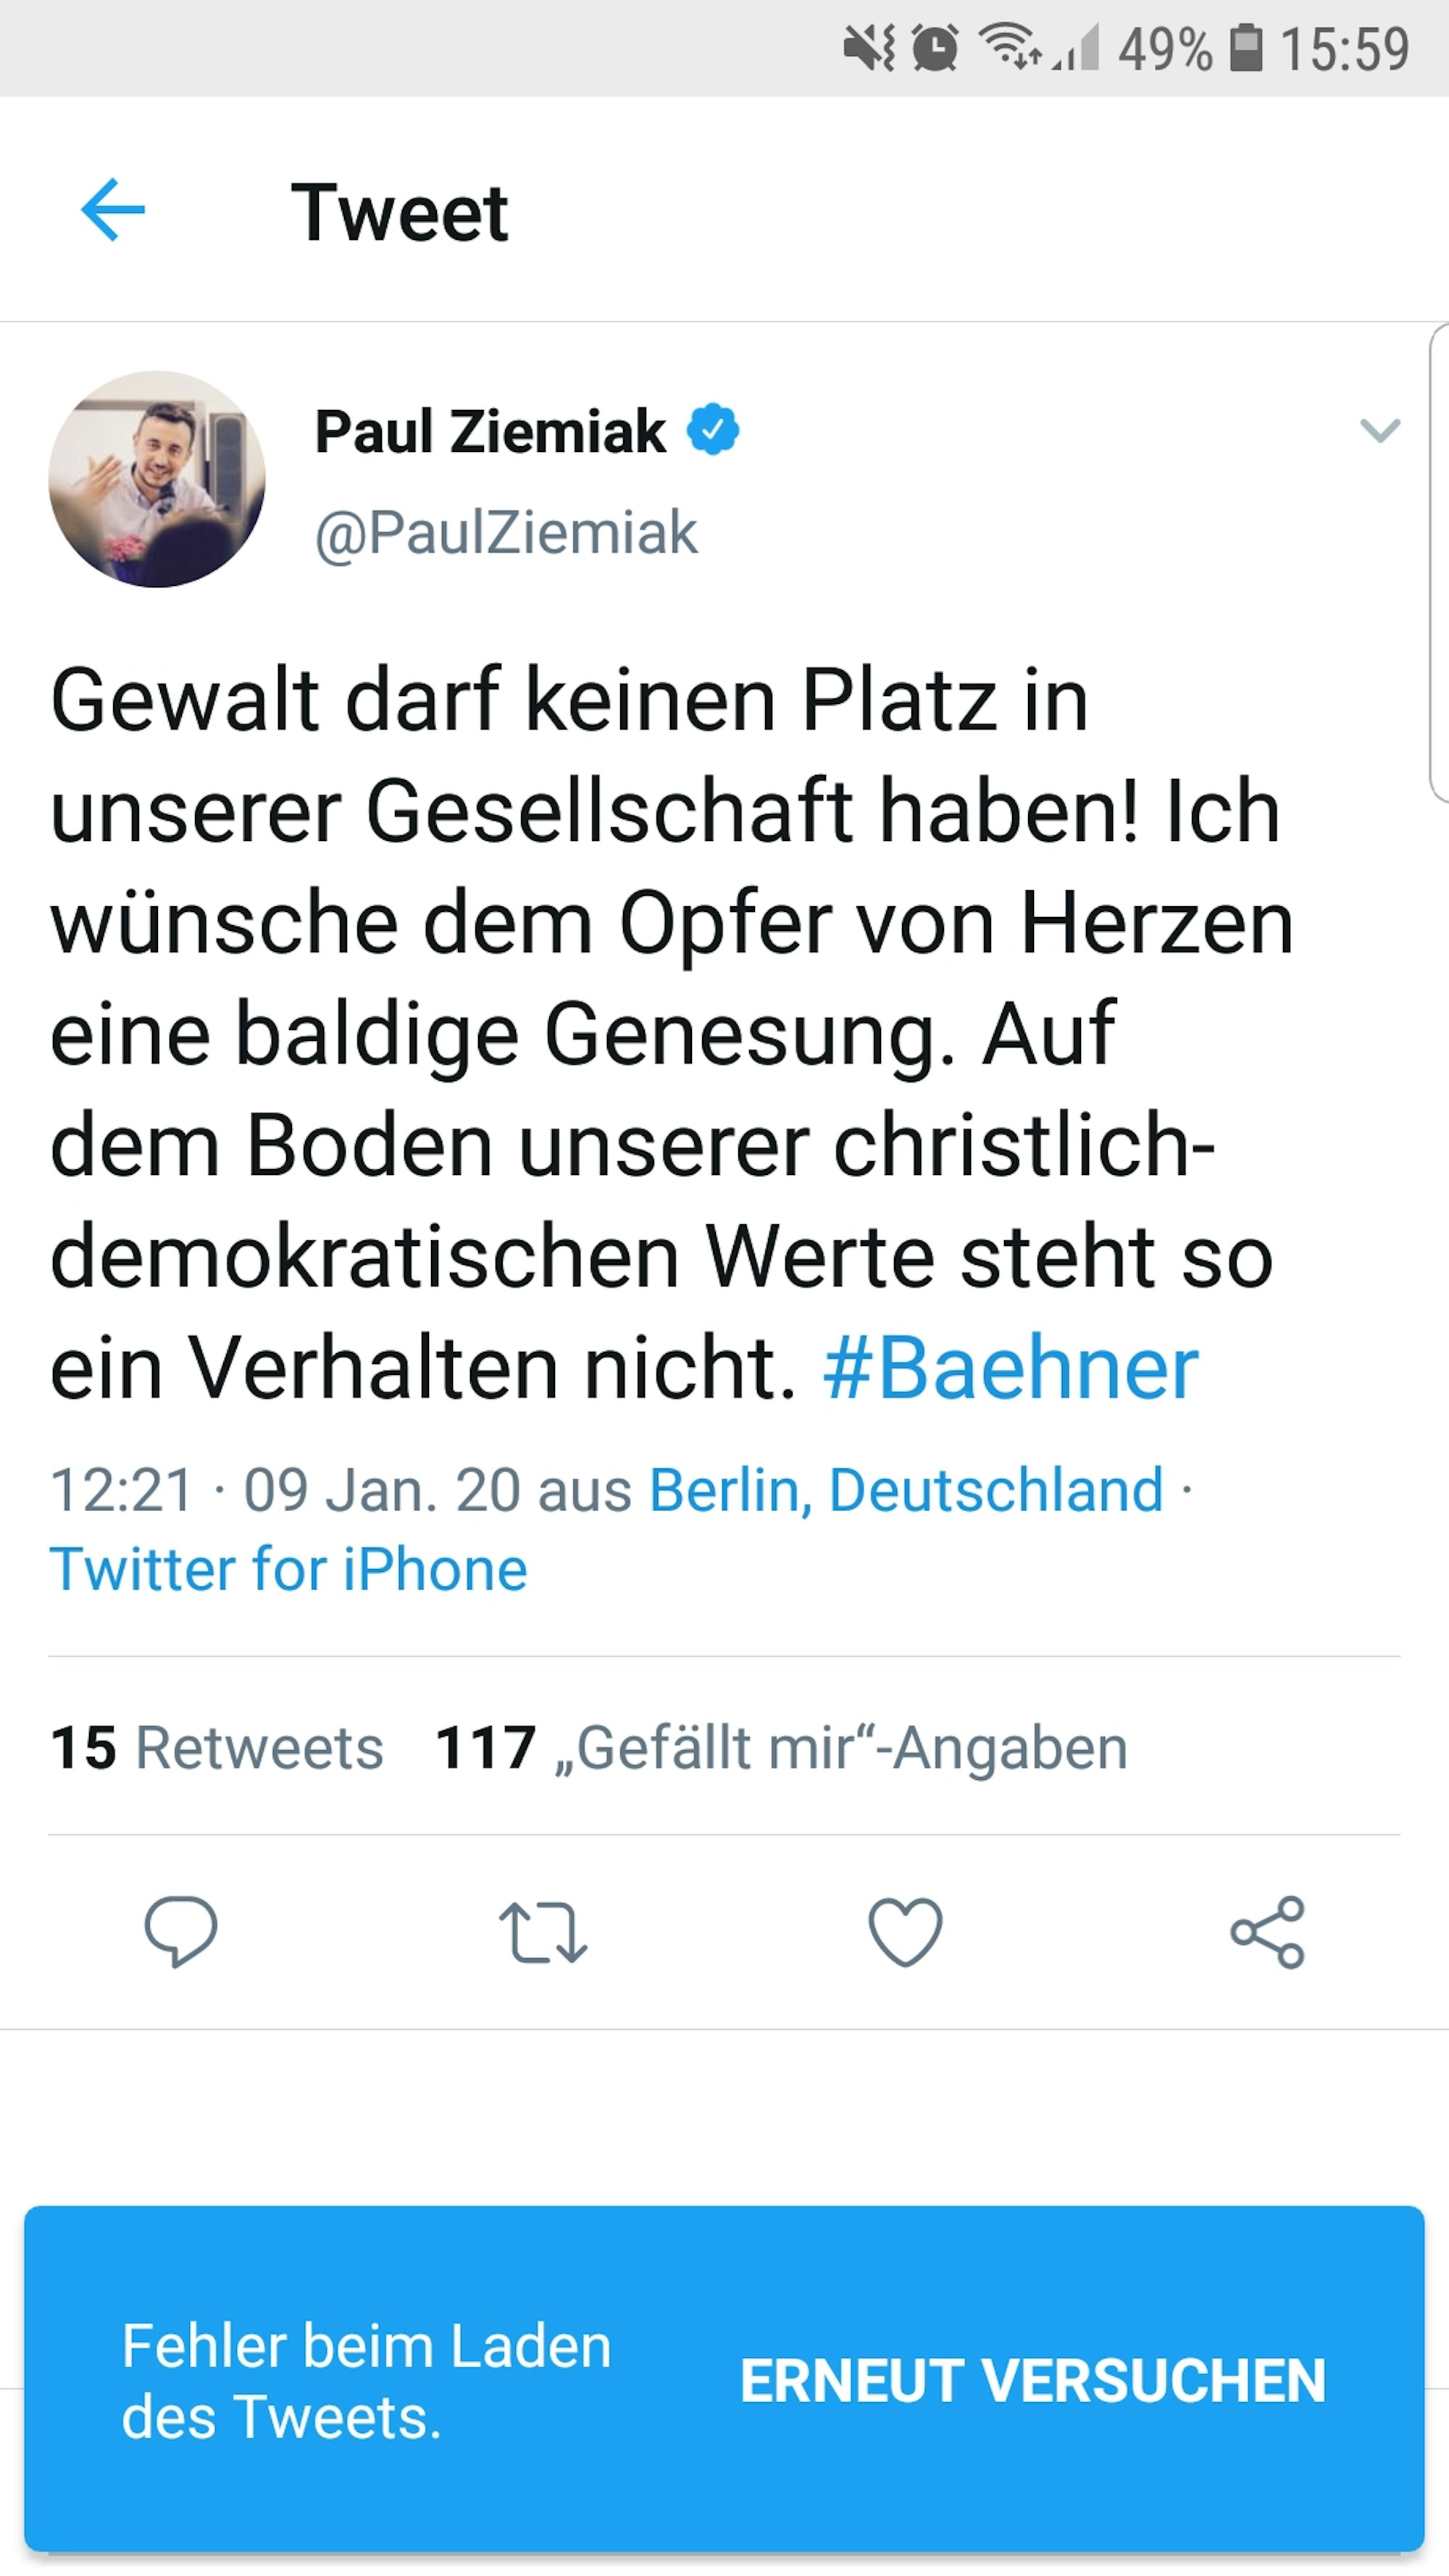 Tweet von CDU-Generalsekretär Paul Ziemiak